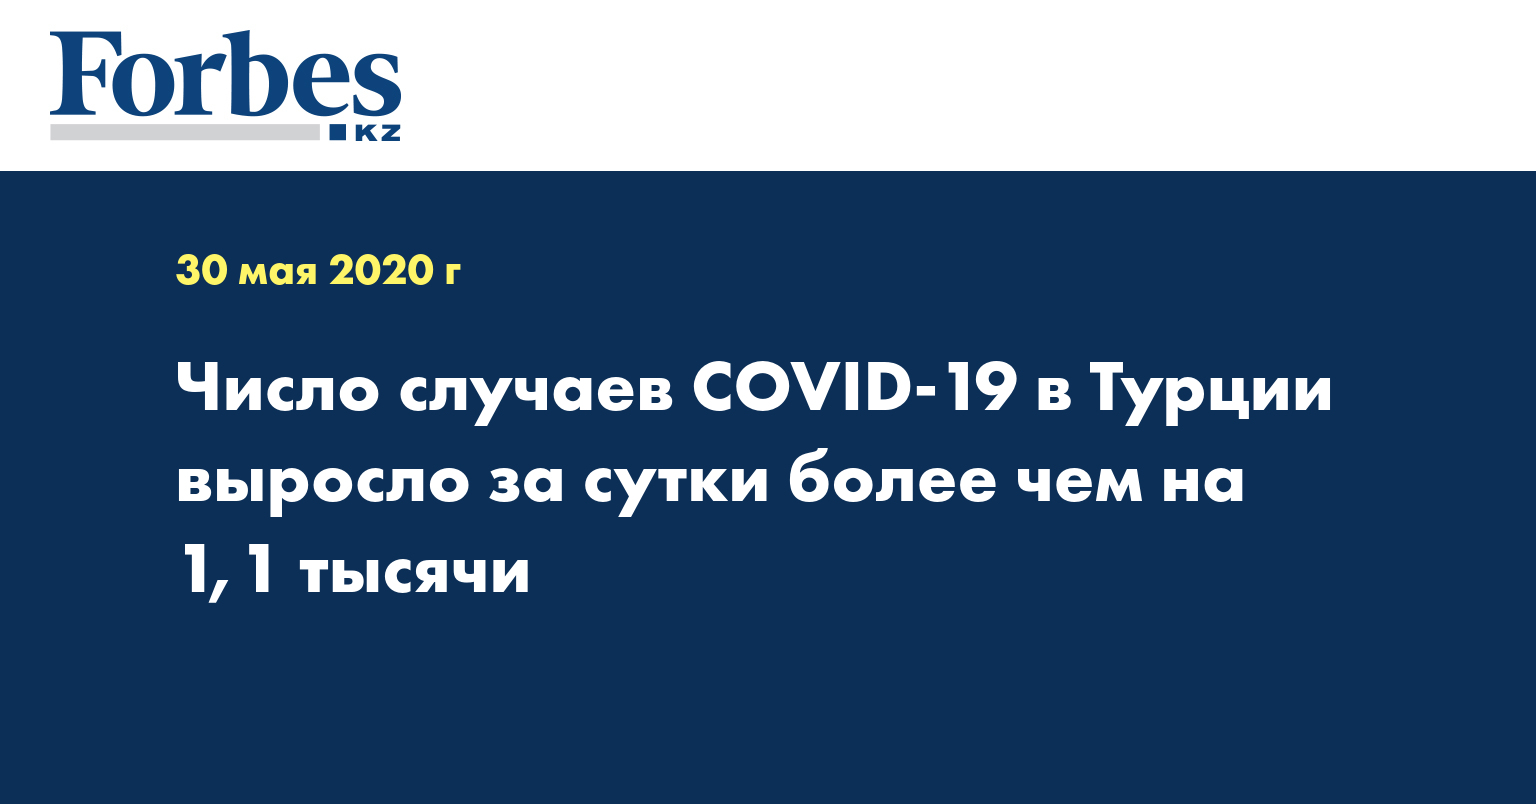 Число случаев COVID-19 в Турции выросло за сутки более чем на 1,1 тысячи